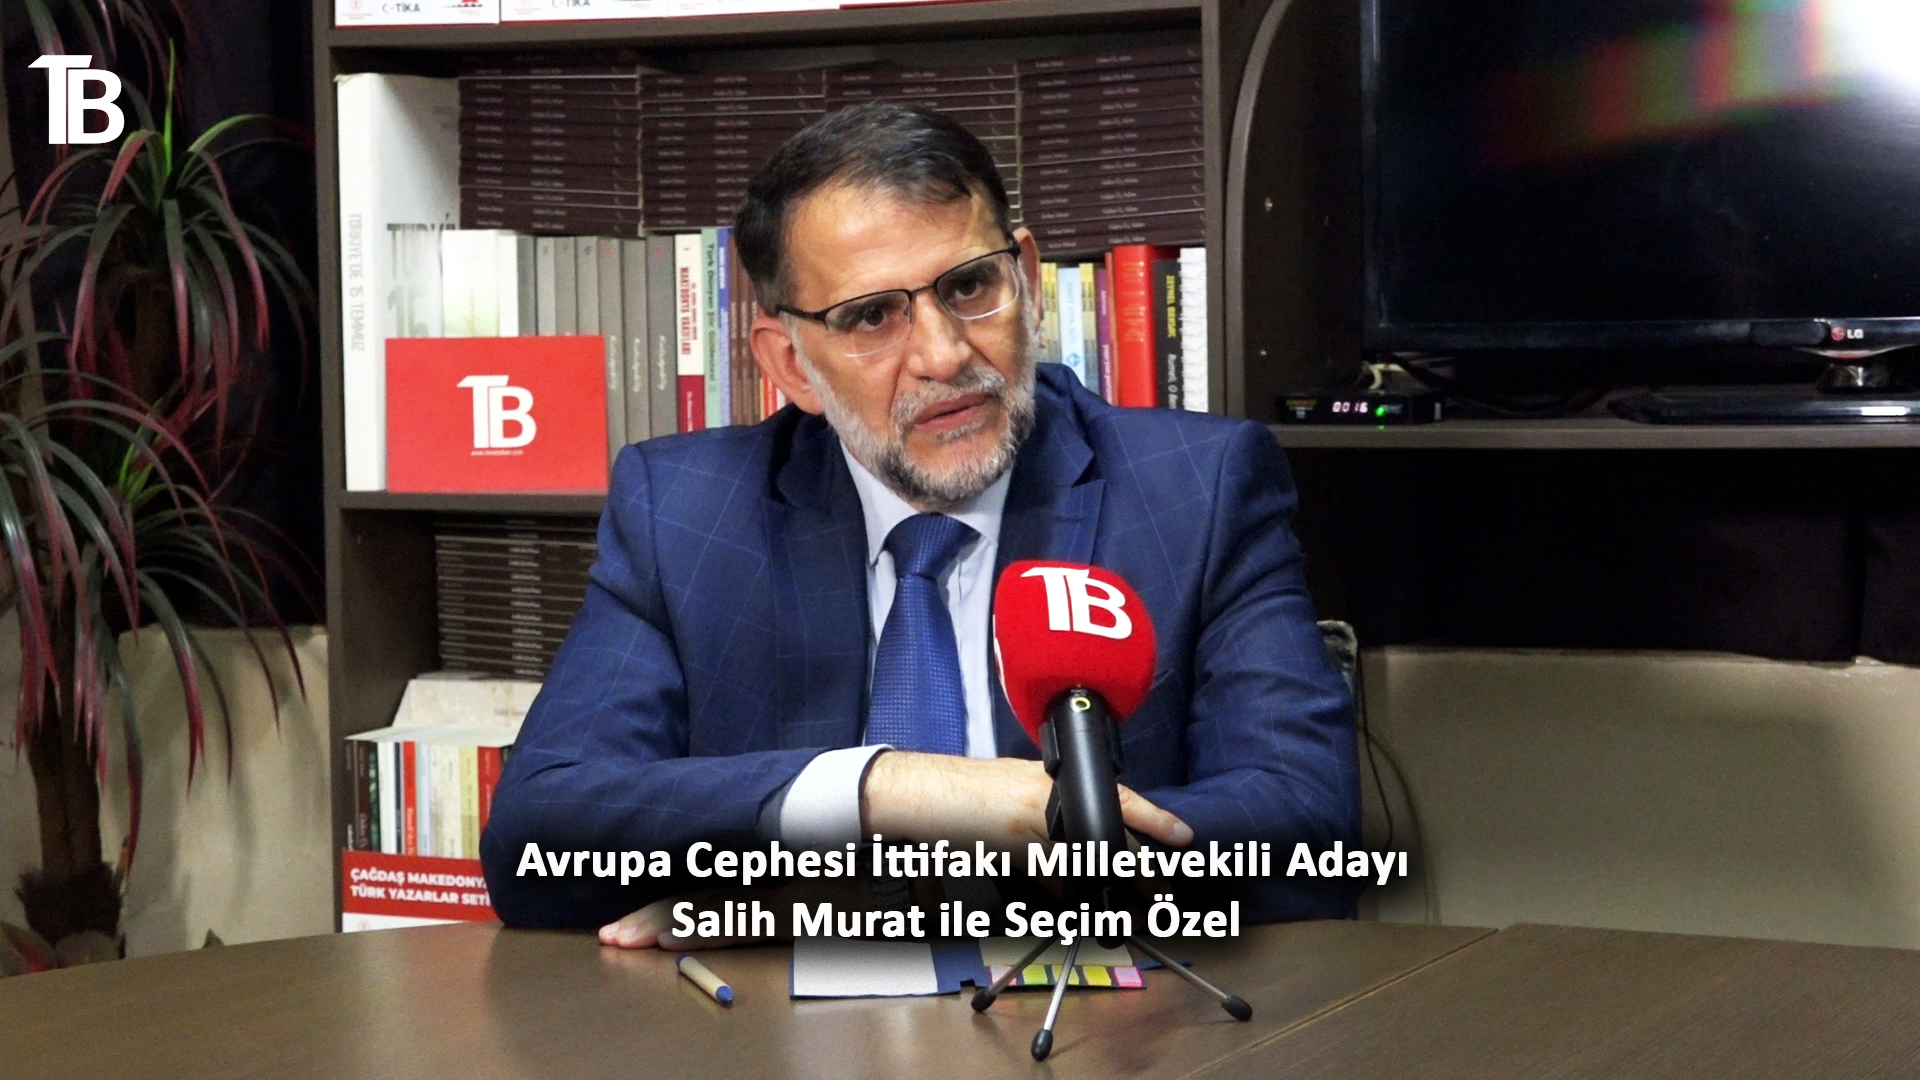 Milletvekili adayı Salih Murat: 8 Mayıs’tan sonra Makedonya’da Türklerin iradesi bambaşka bir yol alacak